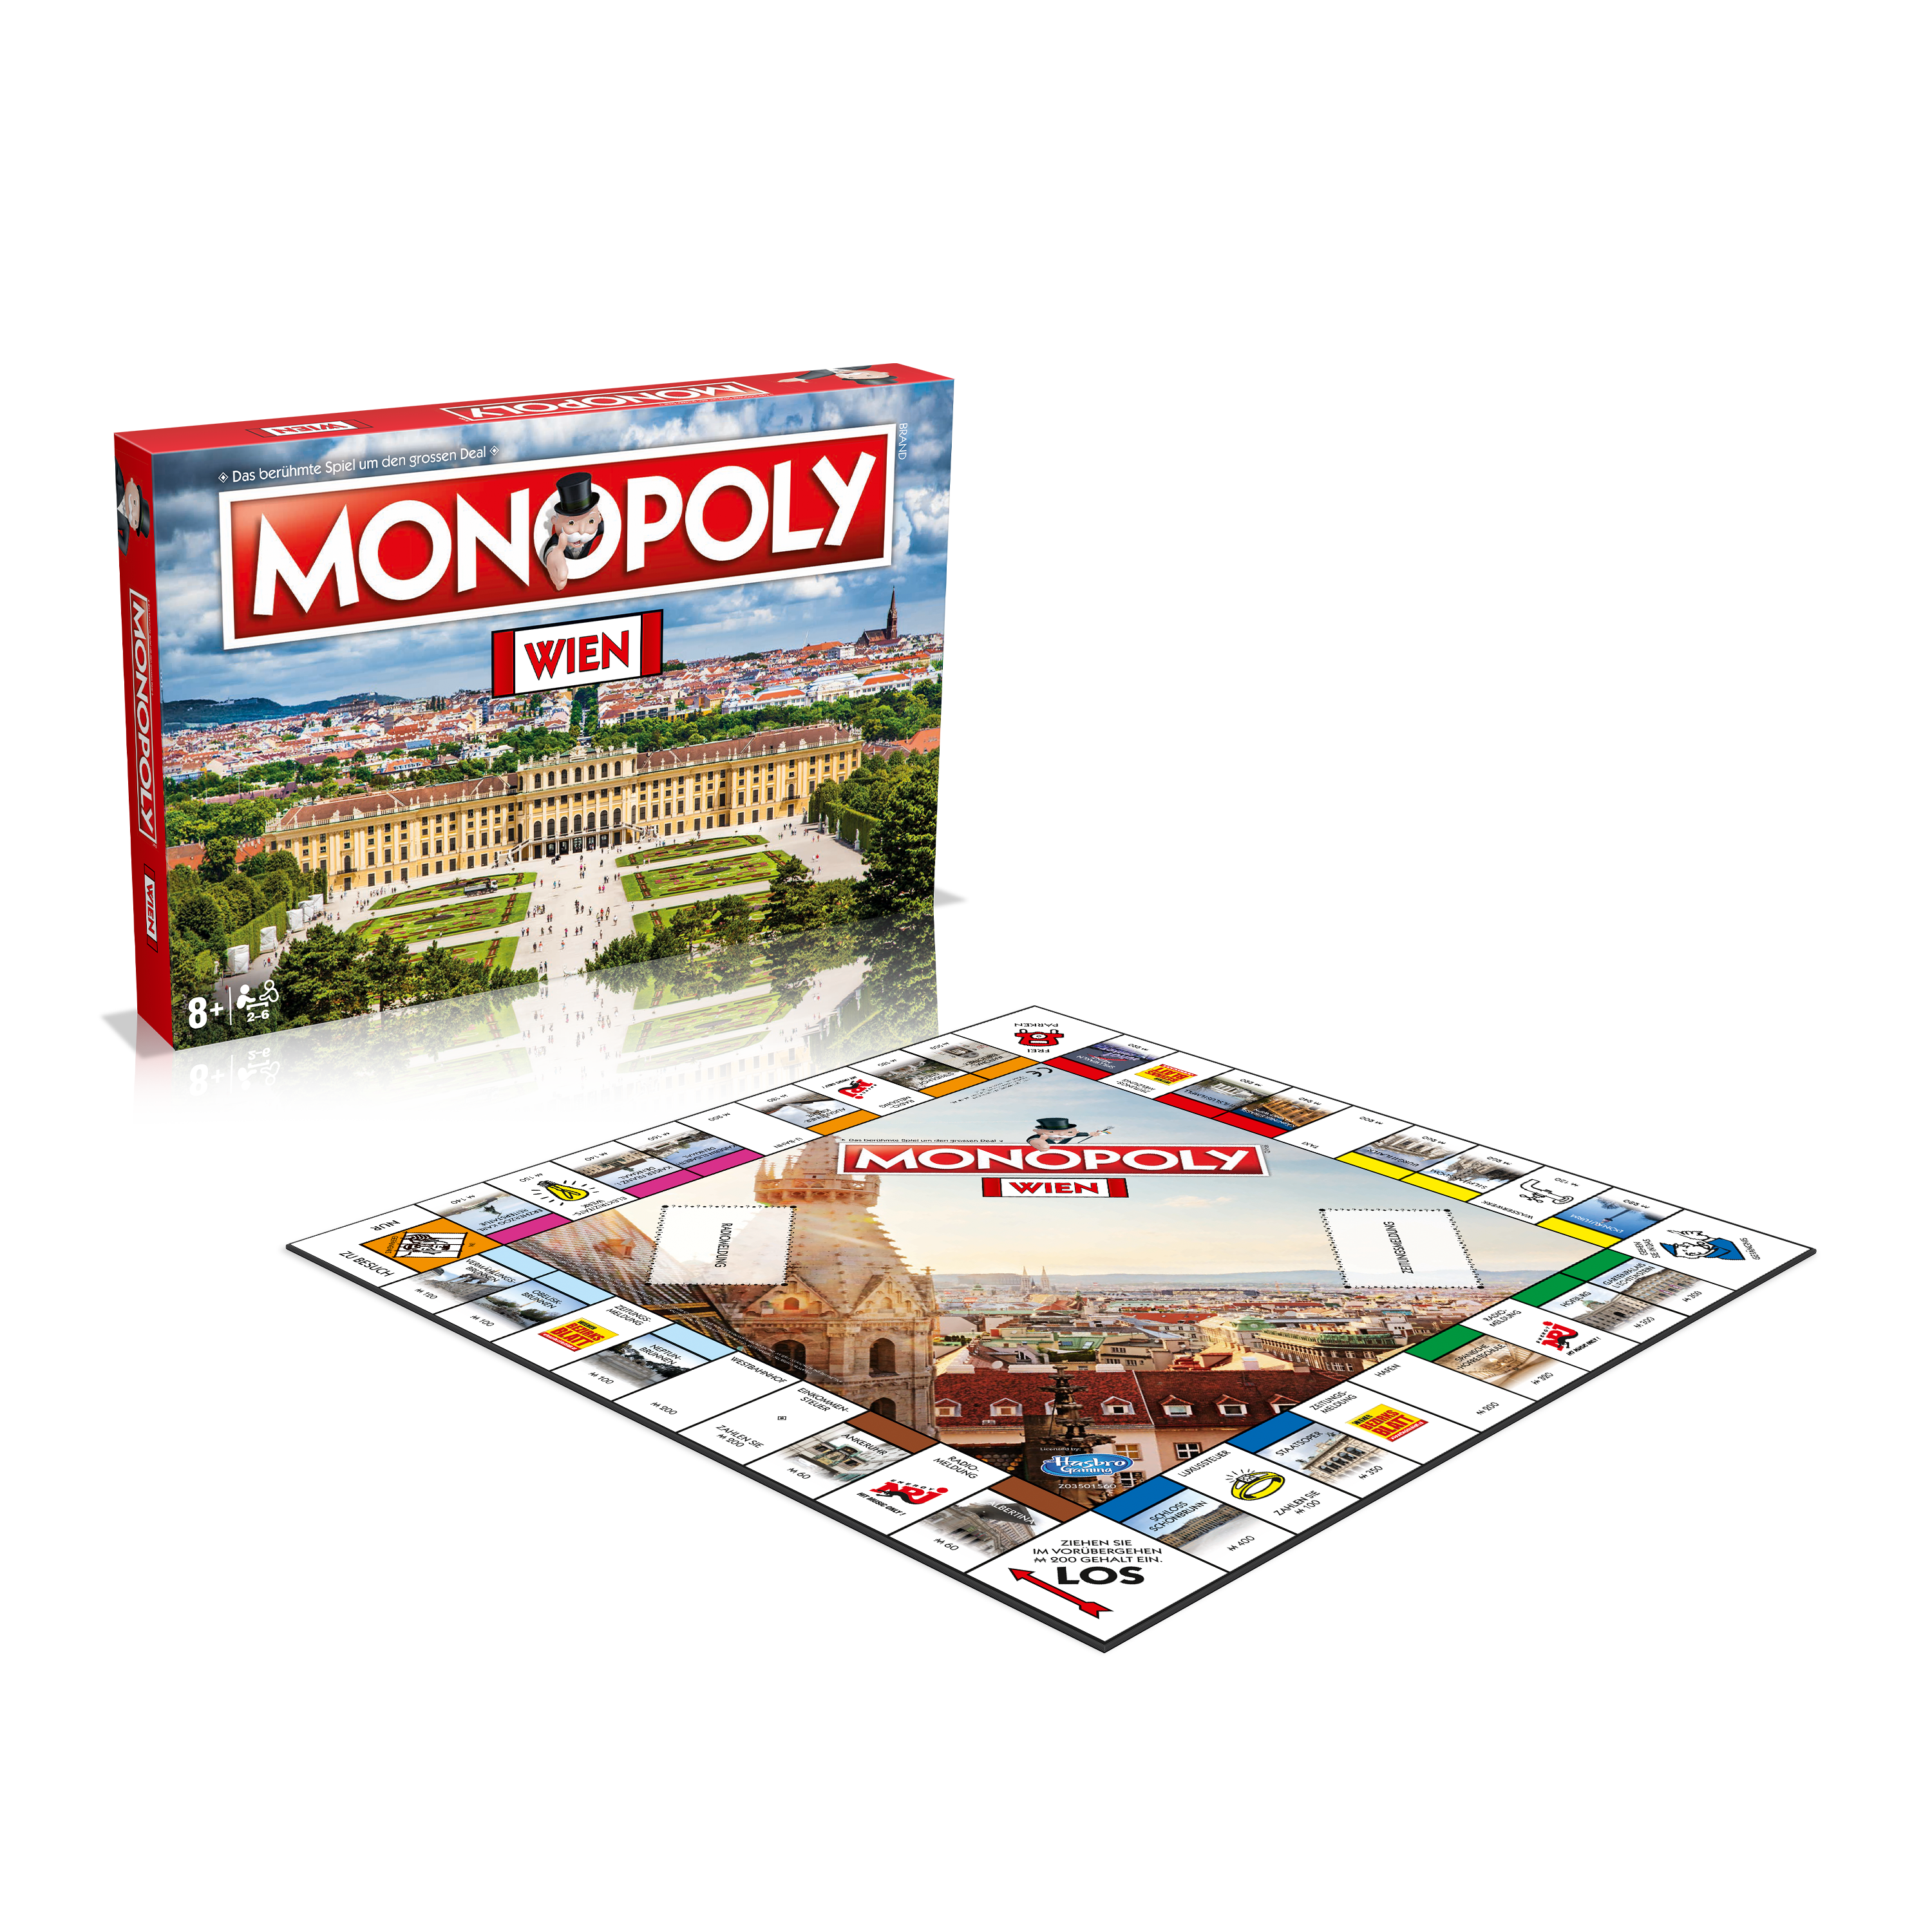 Monopoly - Wien